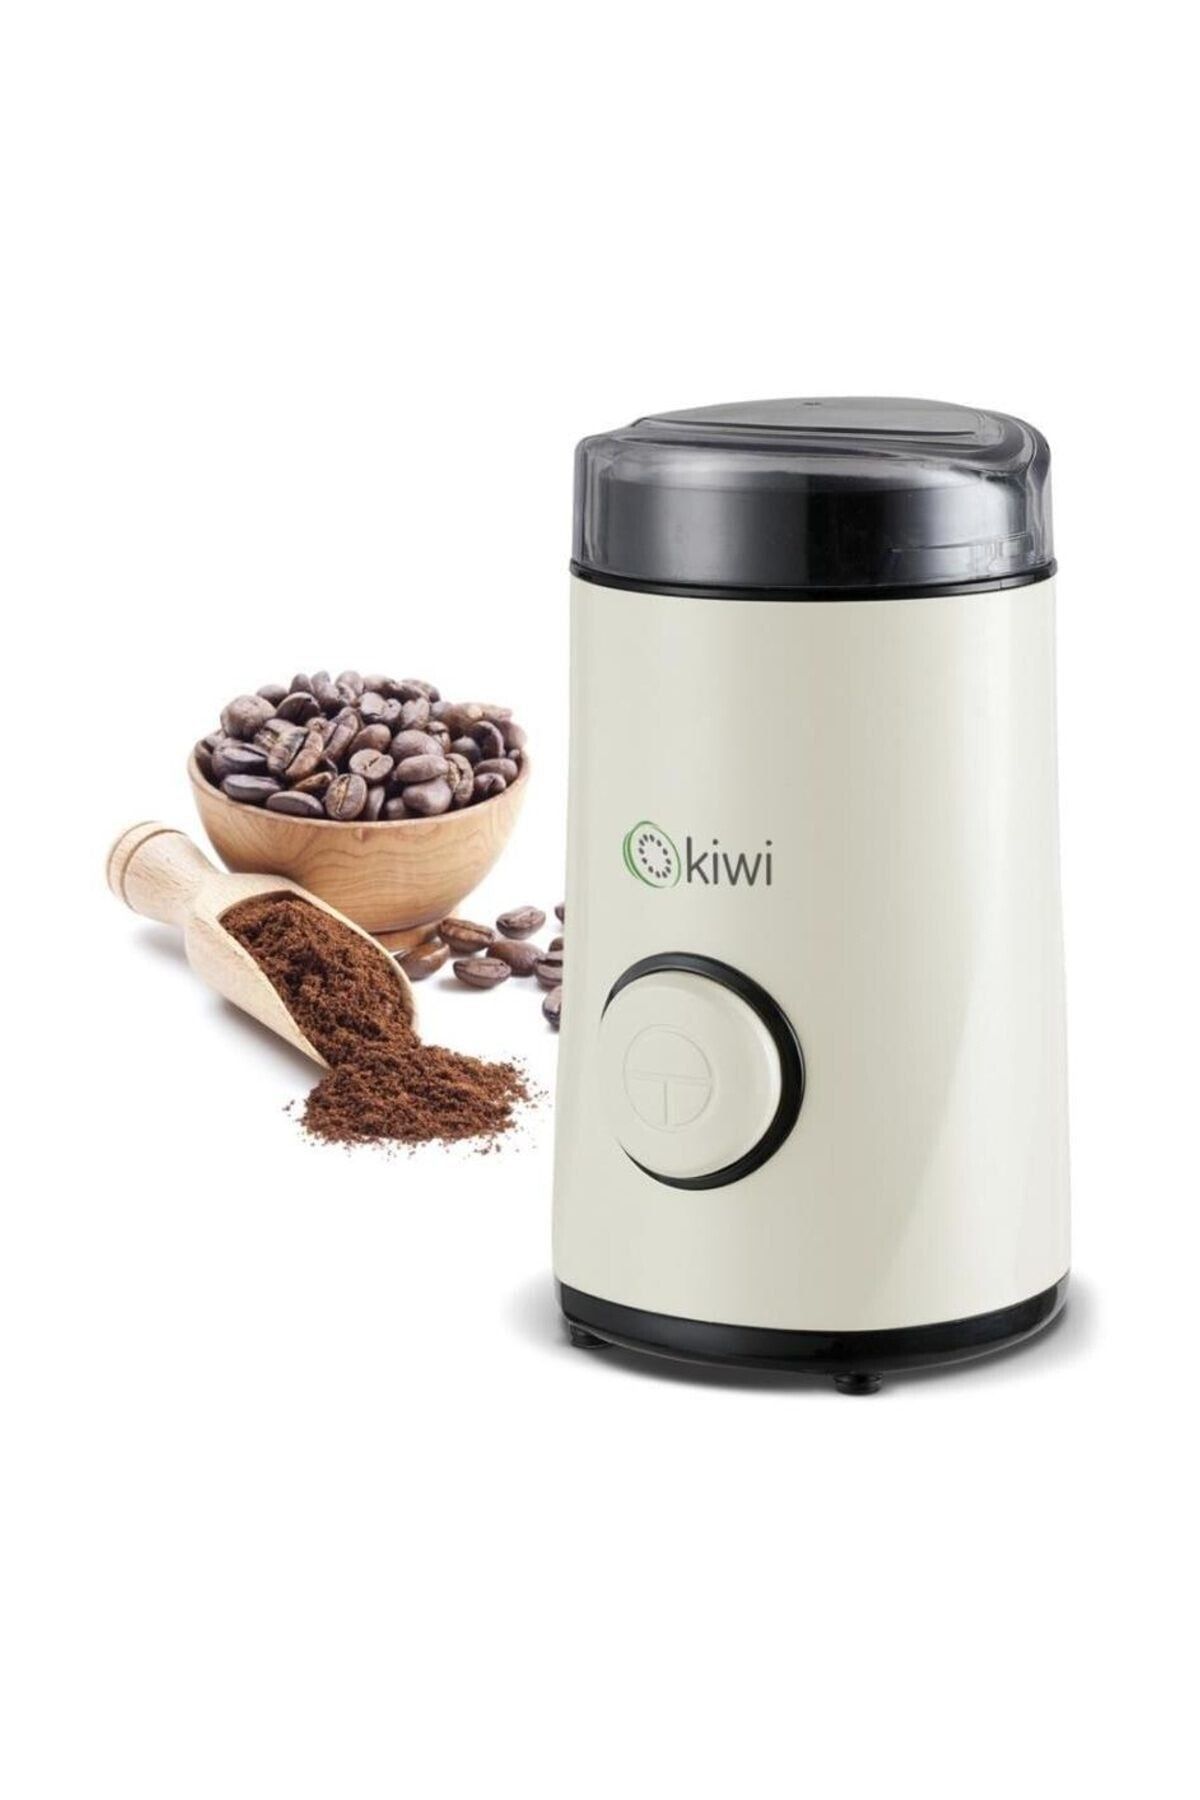 Kiwi Otomatik Kahve Ve Baharat Öğütücü 1500w Orjinal Ürün